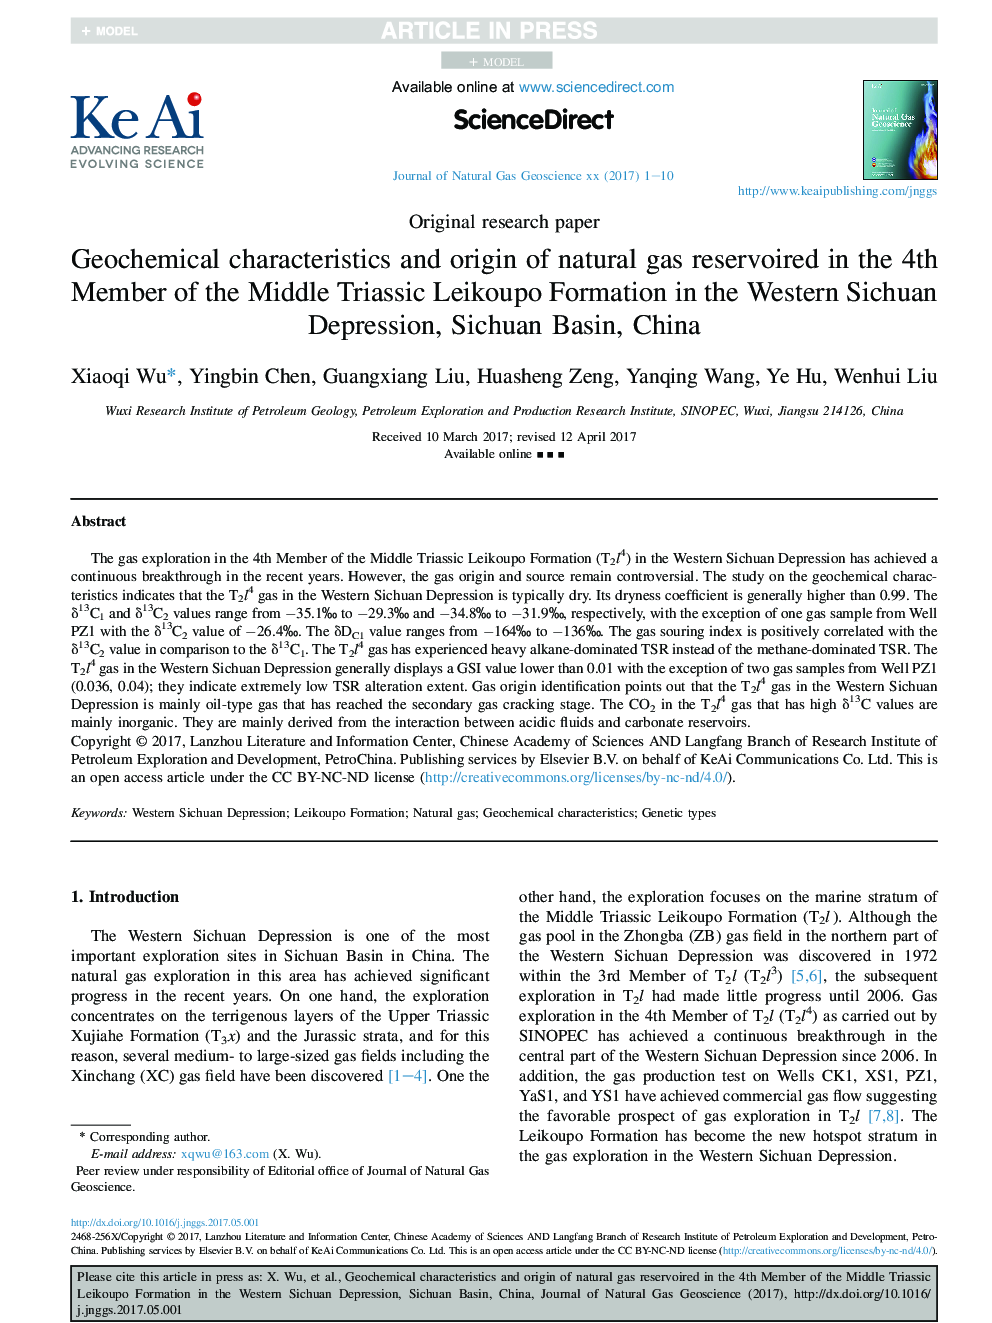 خصوصیات و منشاء ژئوشیمیایی گاز طبیعی ذخیره شده در عضو چهارم تشکیلات لیکوپو ترایسای میانی در افسردگی غرب سیچوان، حوضه سیچوان، چین 